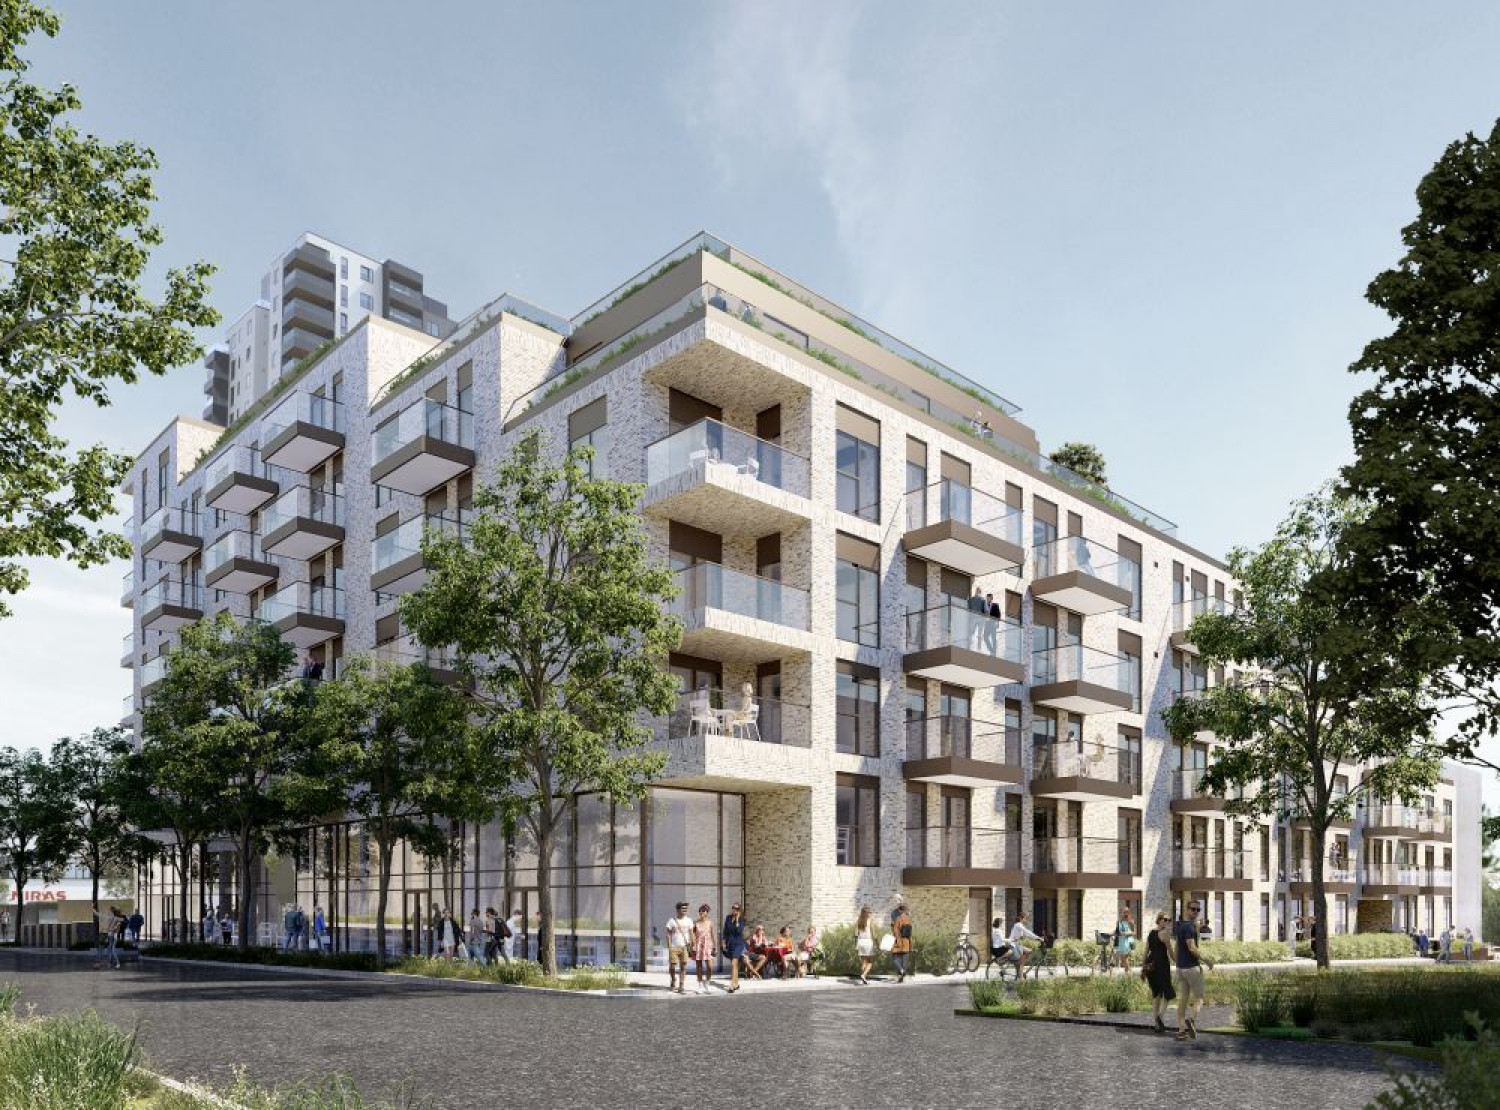 130 nye lejligheder i Byen, Aarhus | Dansk Boligbyg